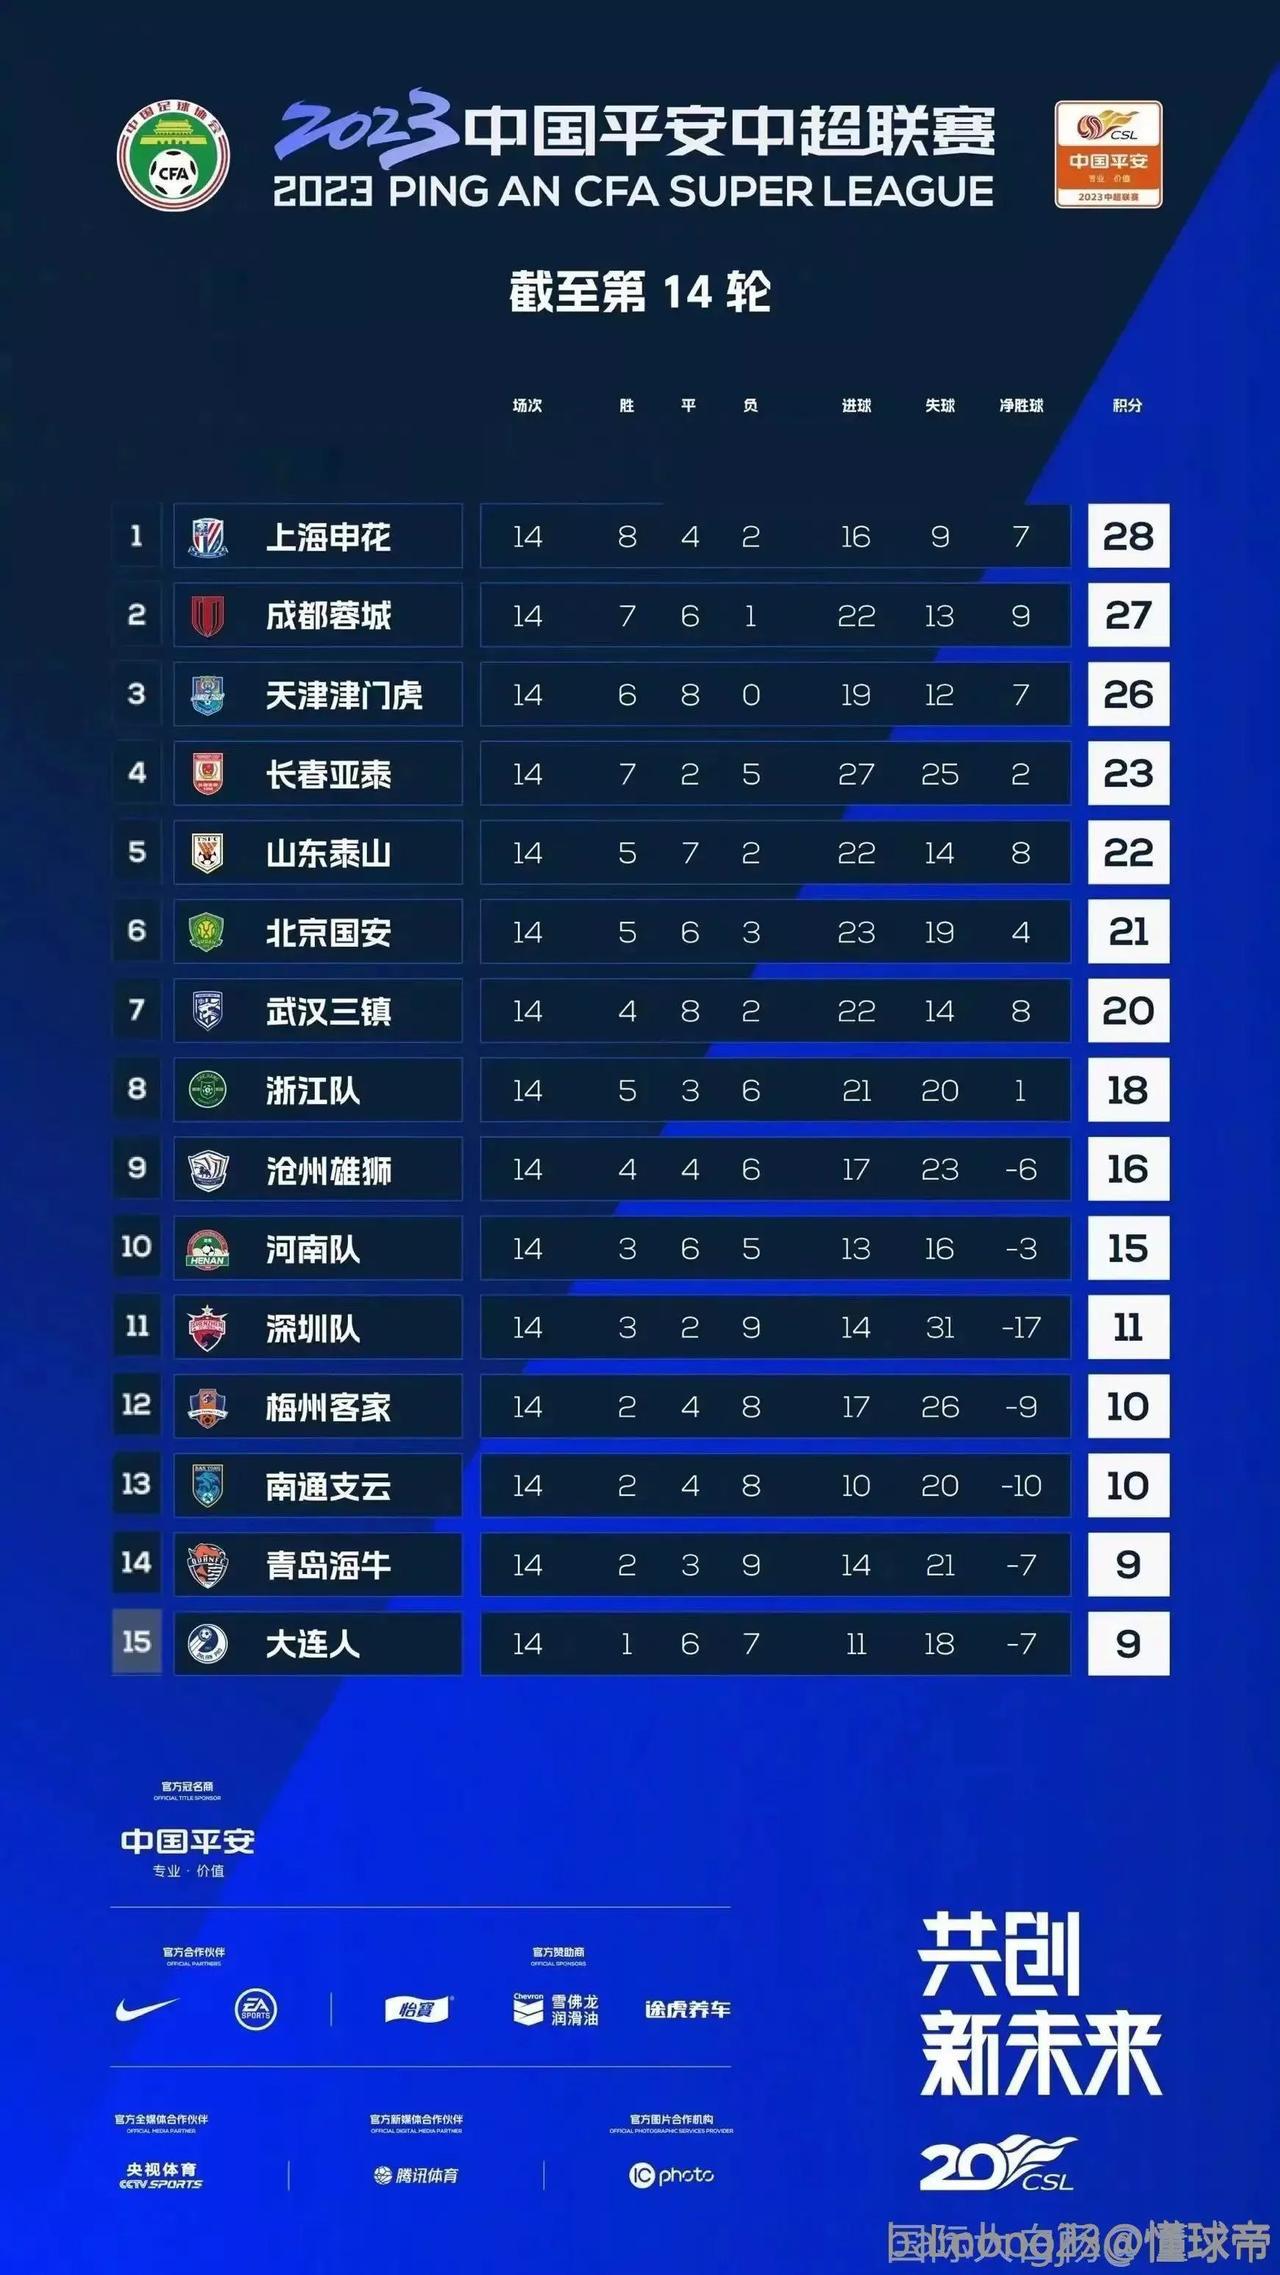 中超第15轮比赛马上开始，从积分榜看，上海申花夺得半程冠军的概率最大，不过前三名